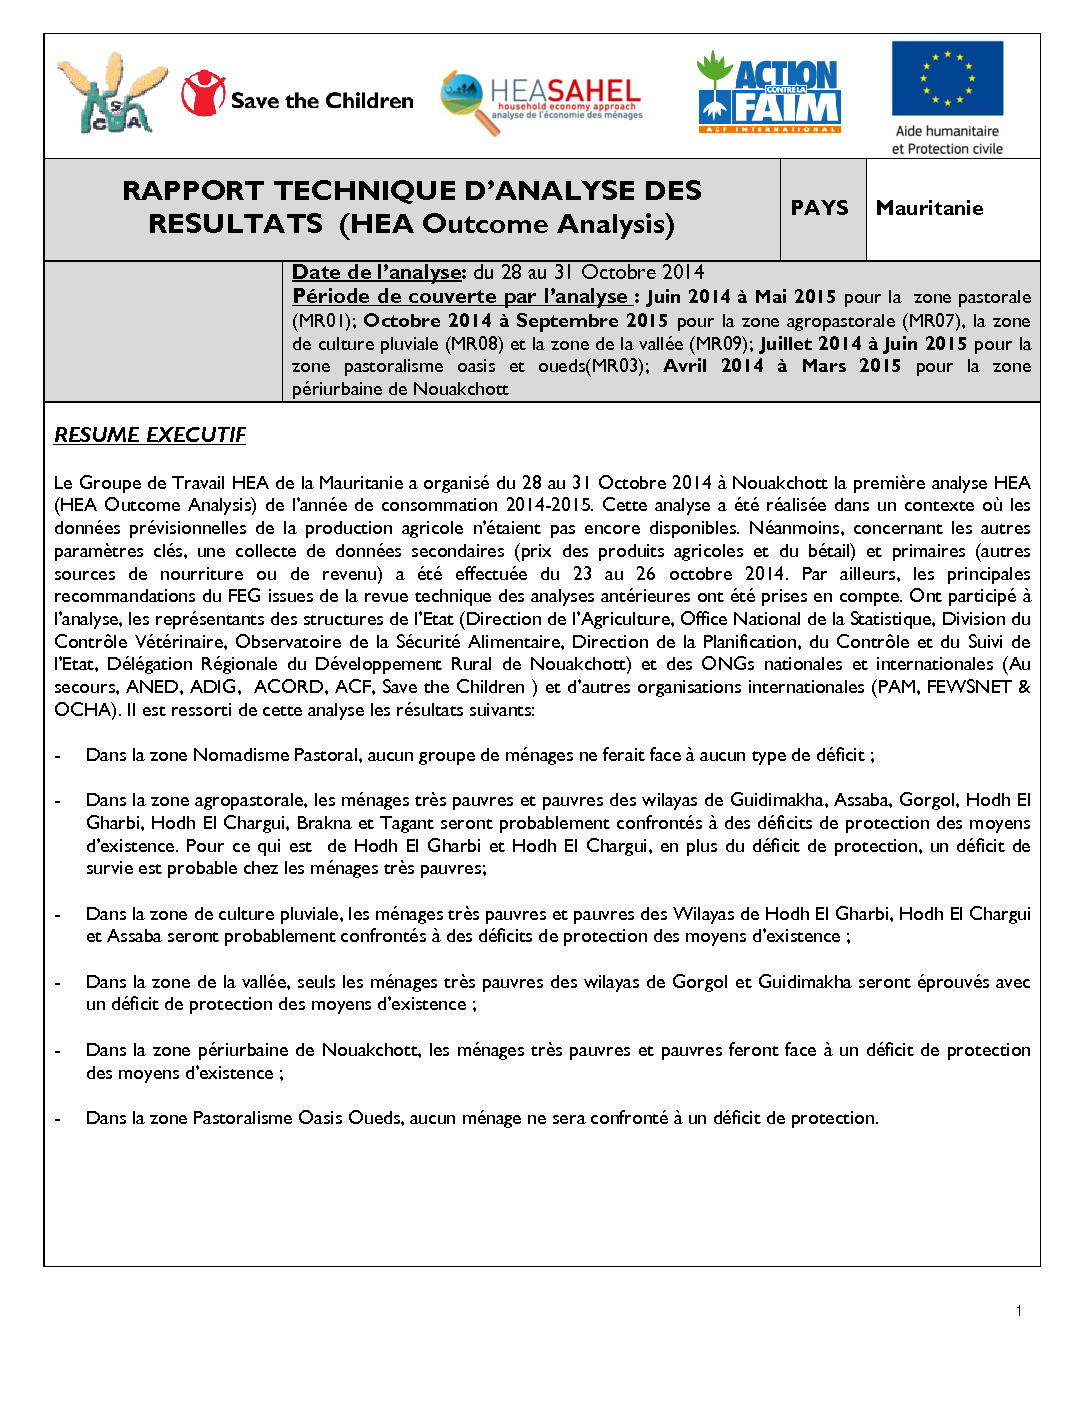 Rapport Analyse Résultats - Mauritanie - Octobre 2014